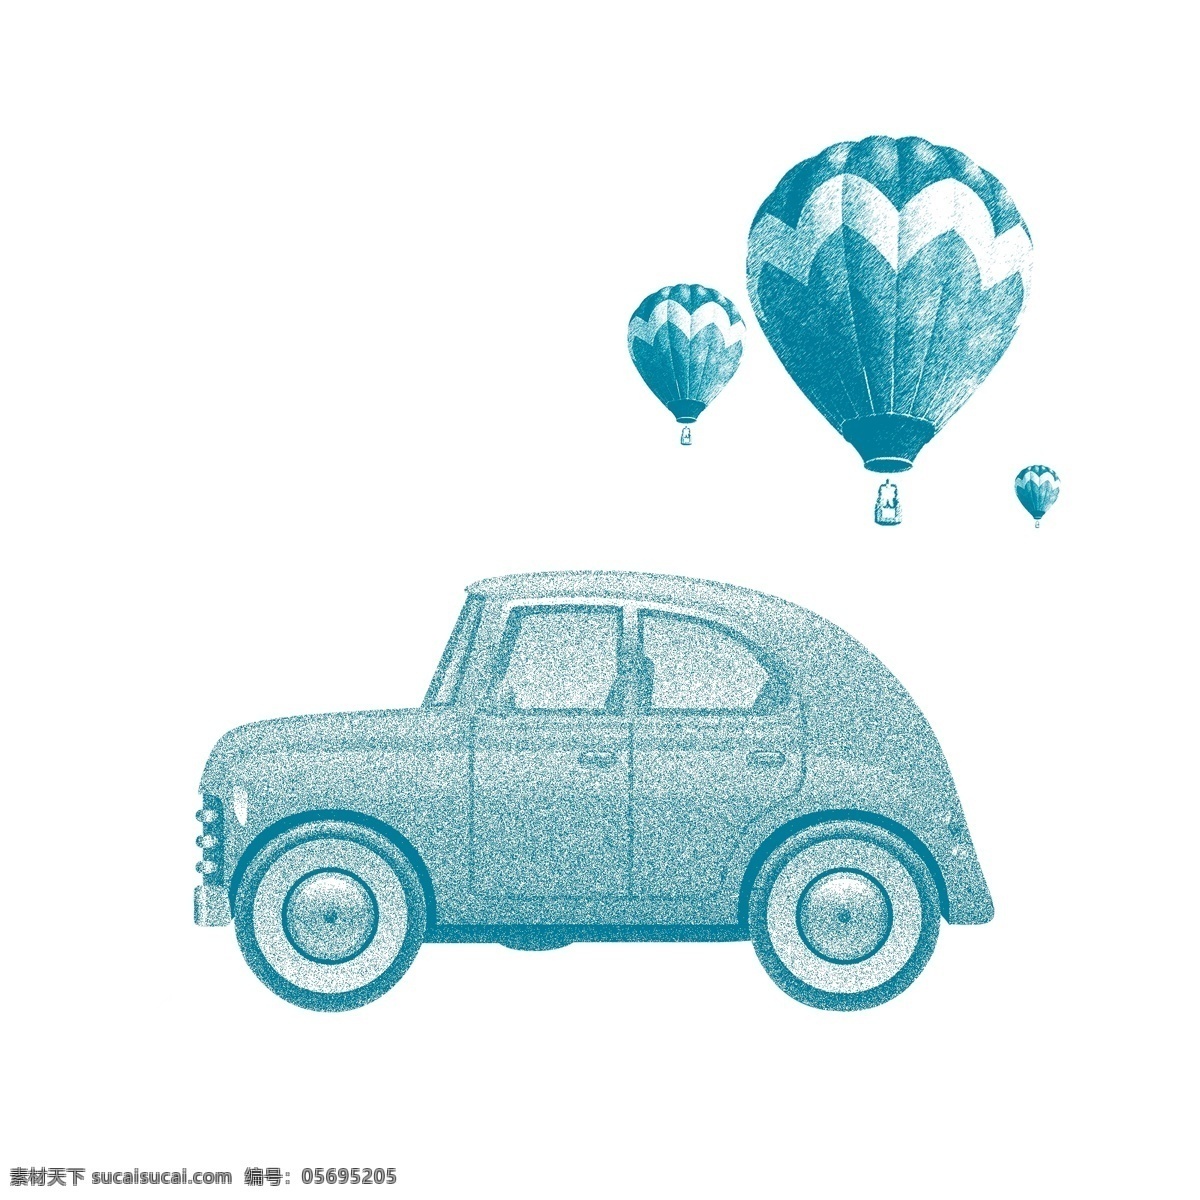 手绘 风格 小汽车 热气球 矢量 超级可爱 蓝绿色小汽车 飘 空中 三个 周末远足郊游 儿童插画